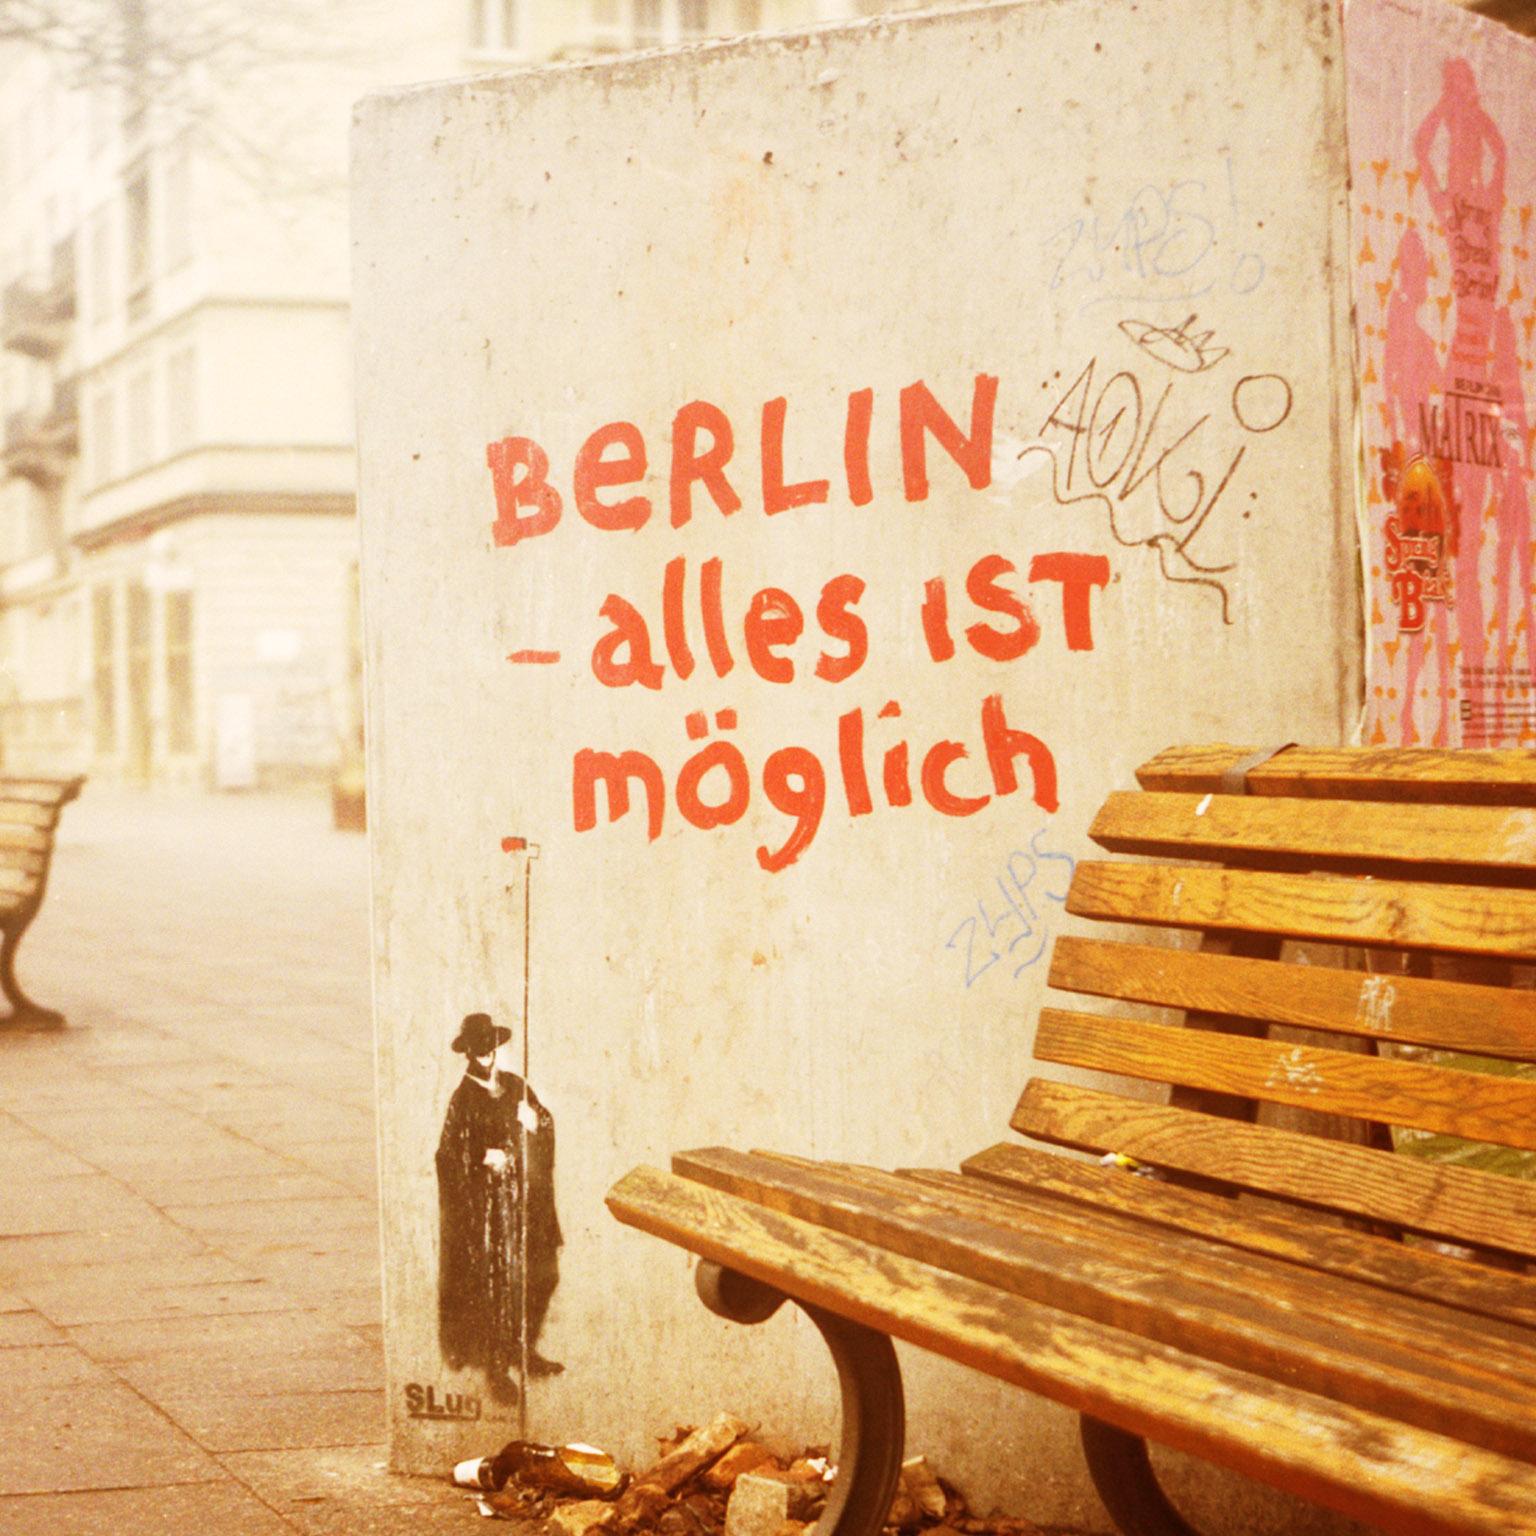 a Piece of Berlin - alles ist möglich - Pieces of Berlin - Graffiti, Streetart - Contemporary Photograph by Florian Reischauer